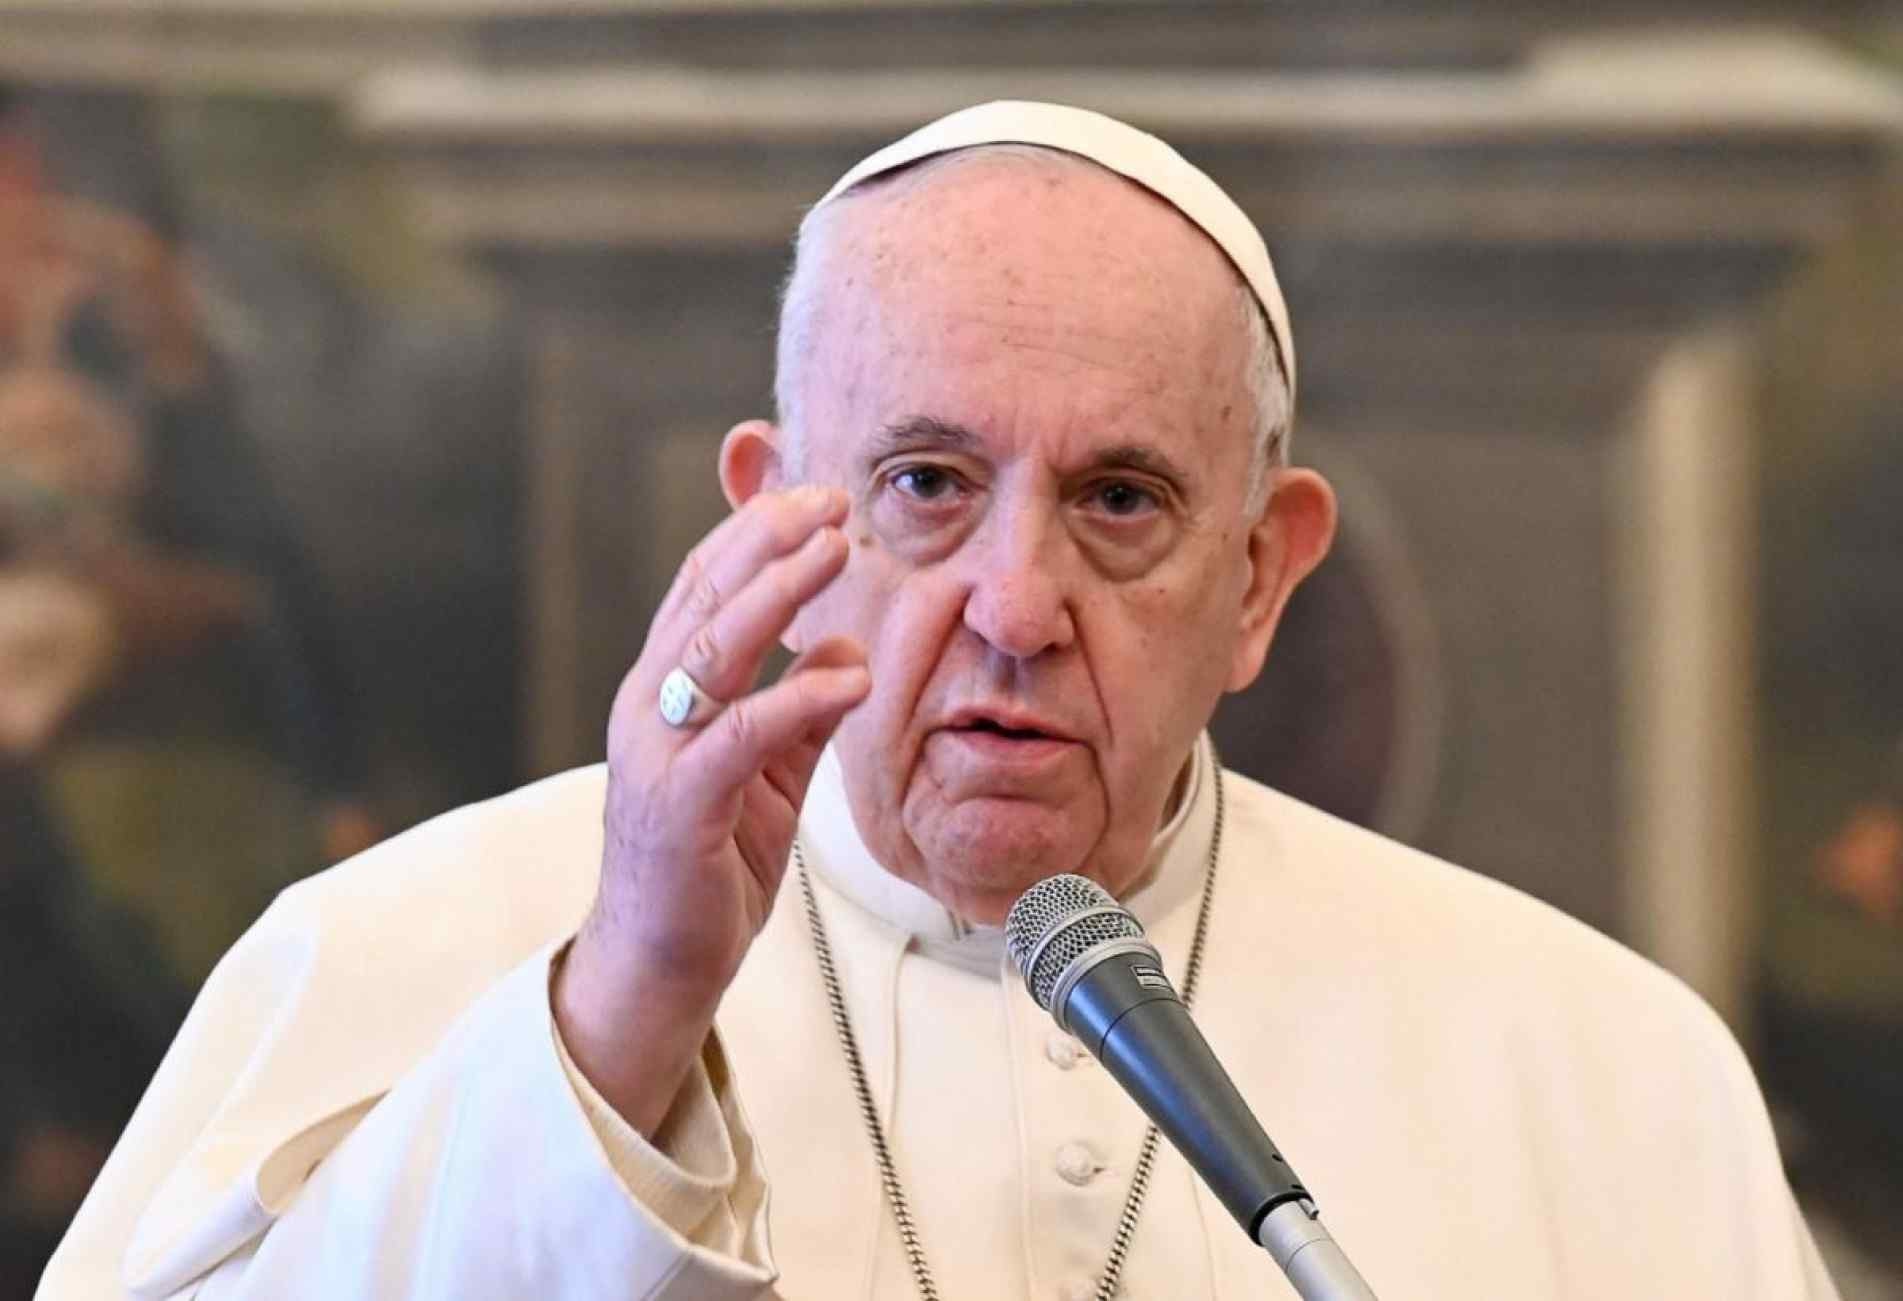 Papa expressa vergonha por escândalo de abusos sexuais de crianças na França